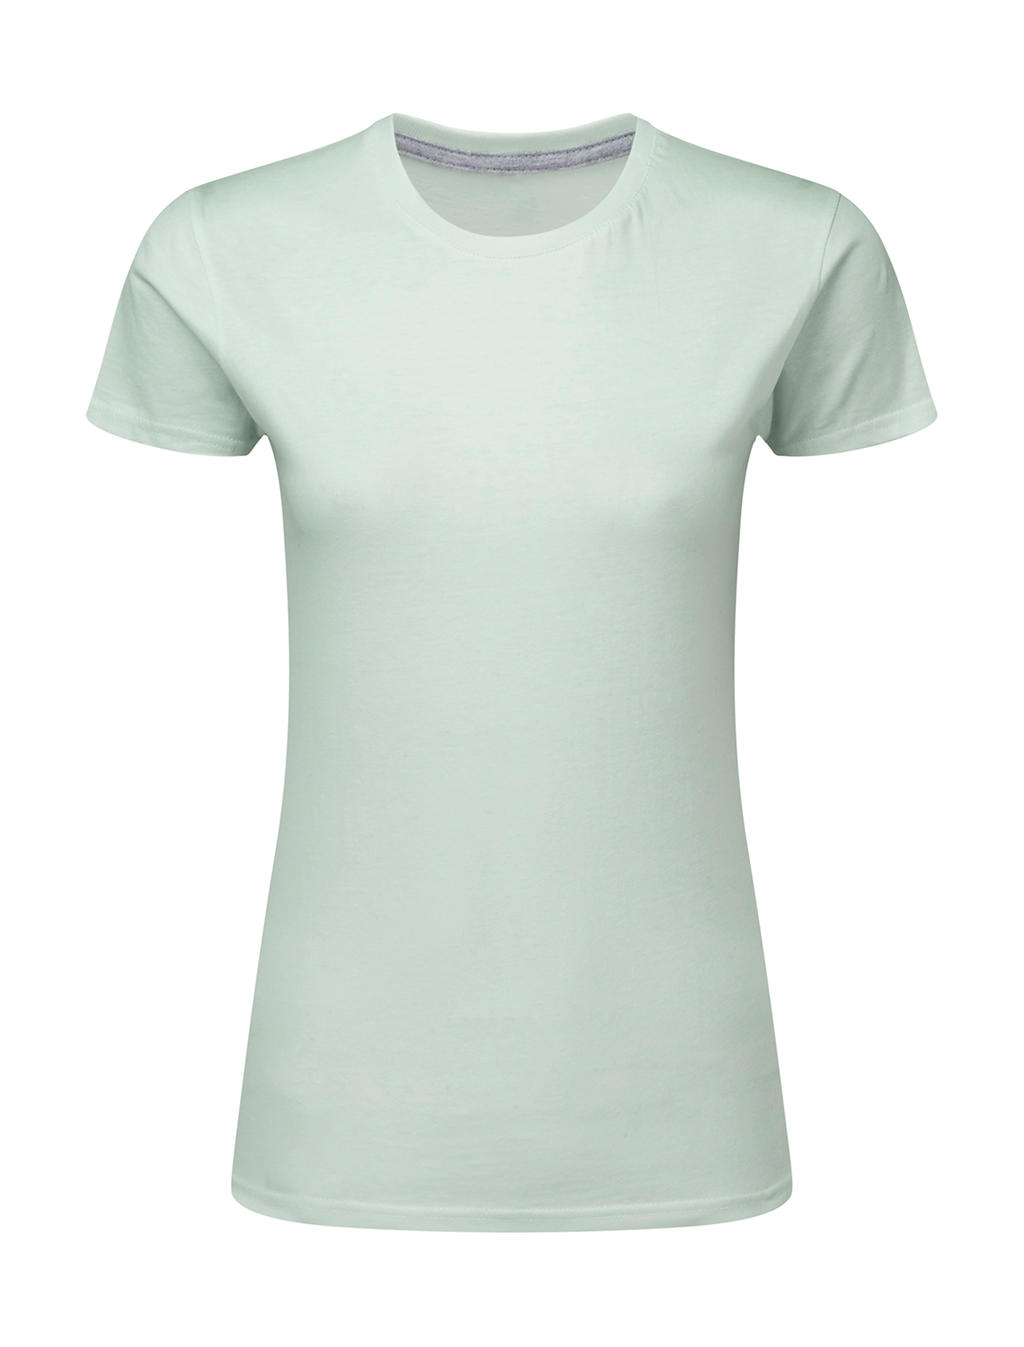 Dokonale potlačiteľné dámske tričko bez štítku - mercury grey